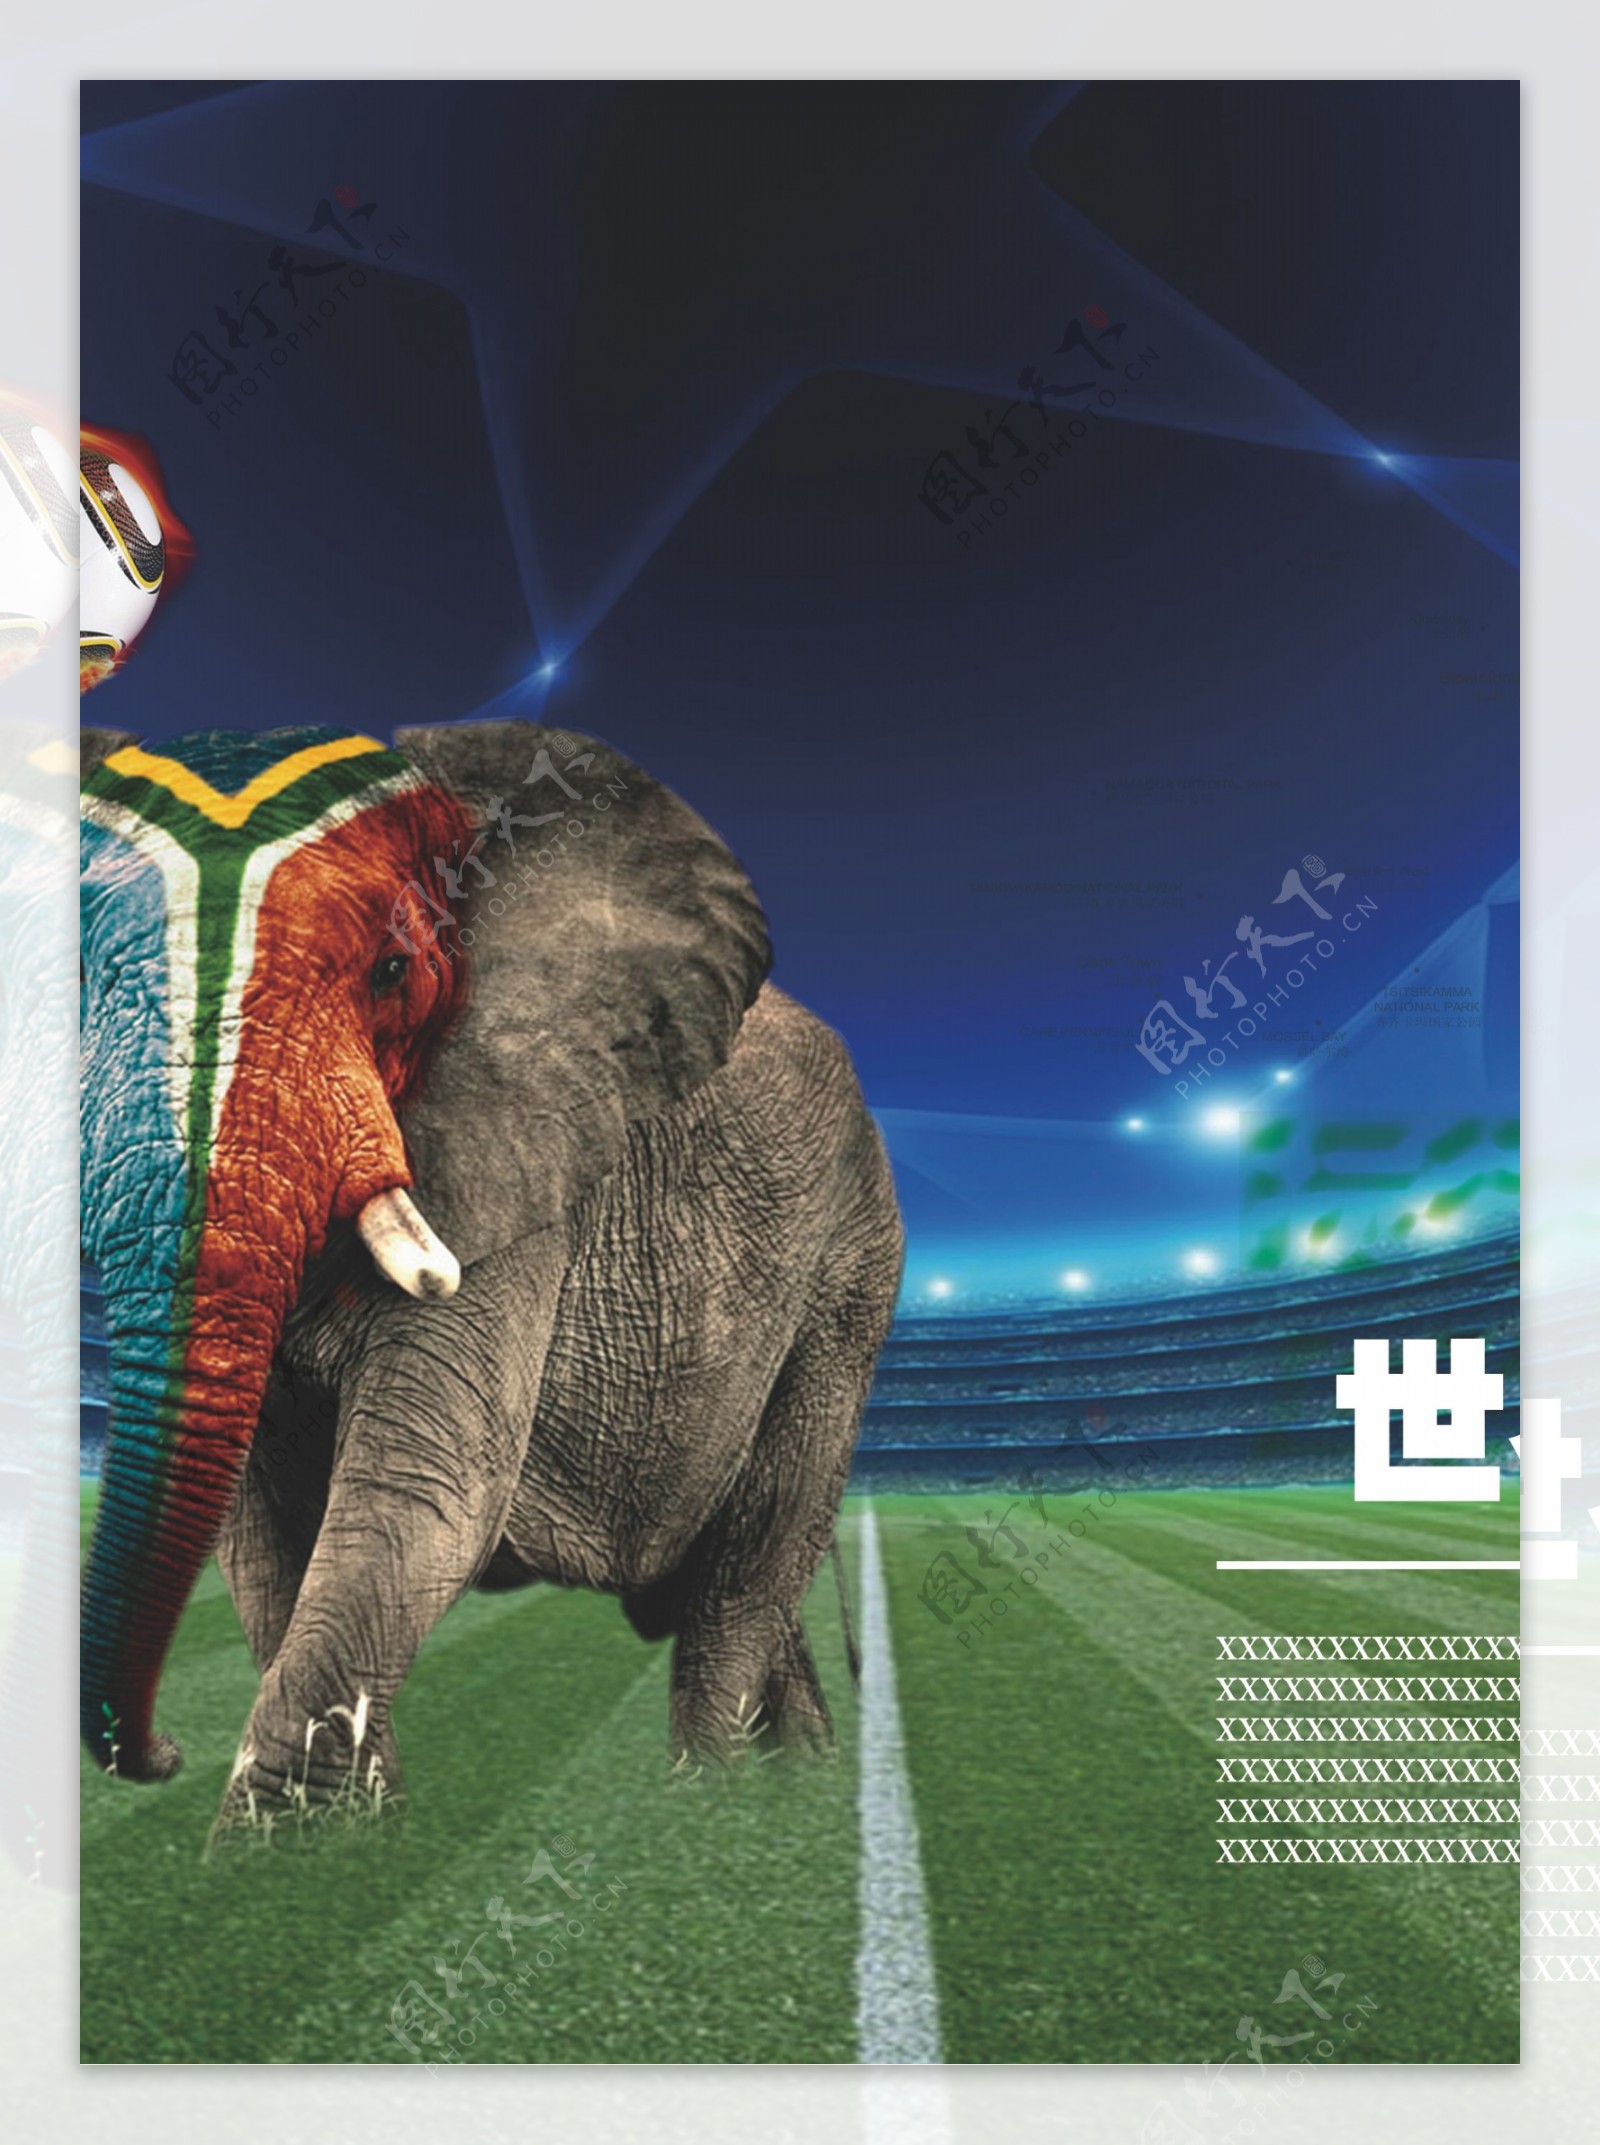 2010南非世界杯海报图片